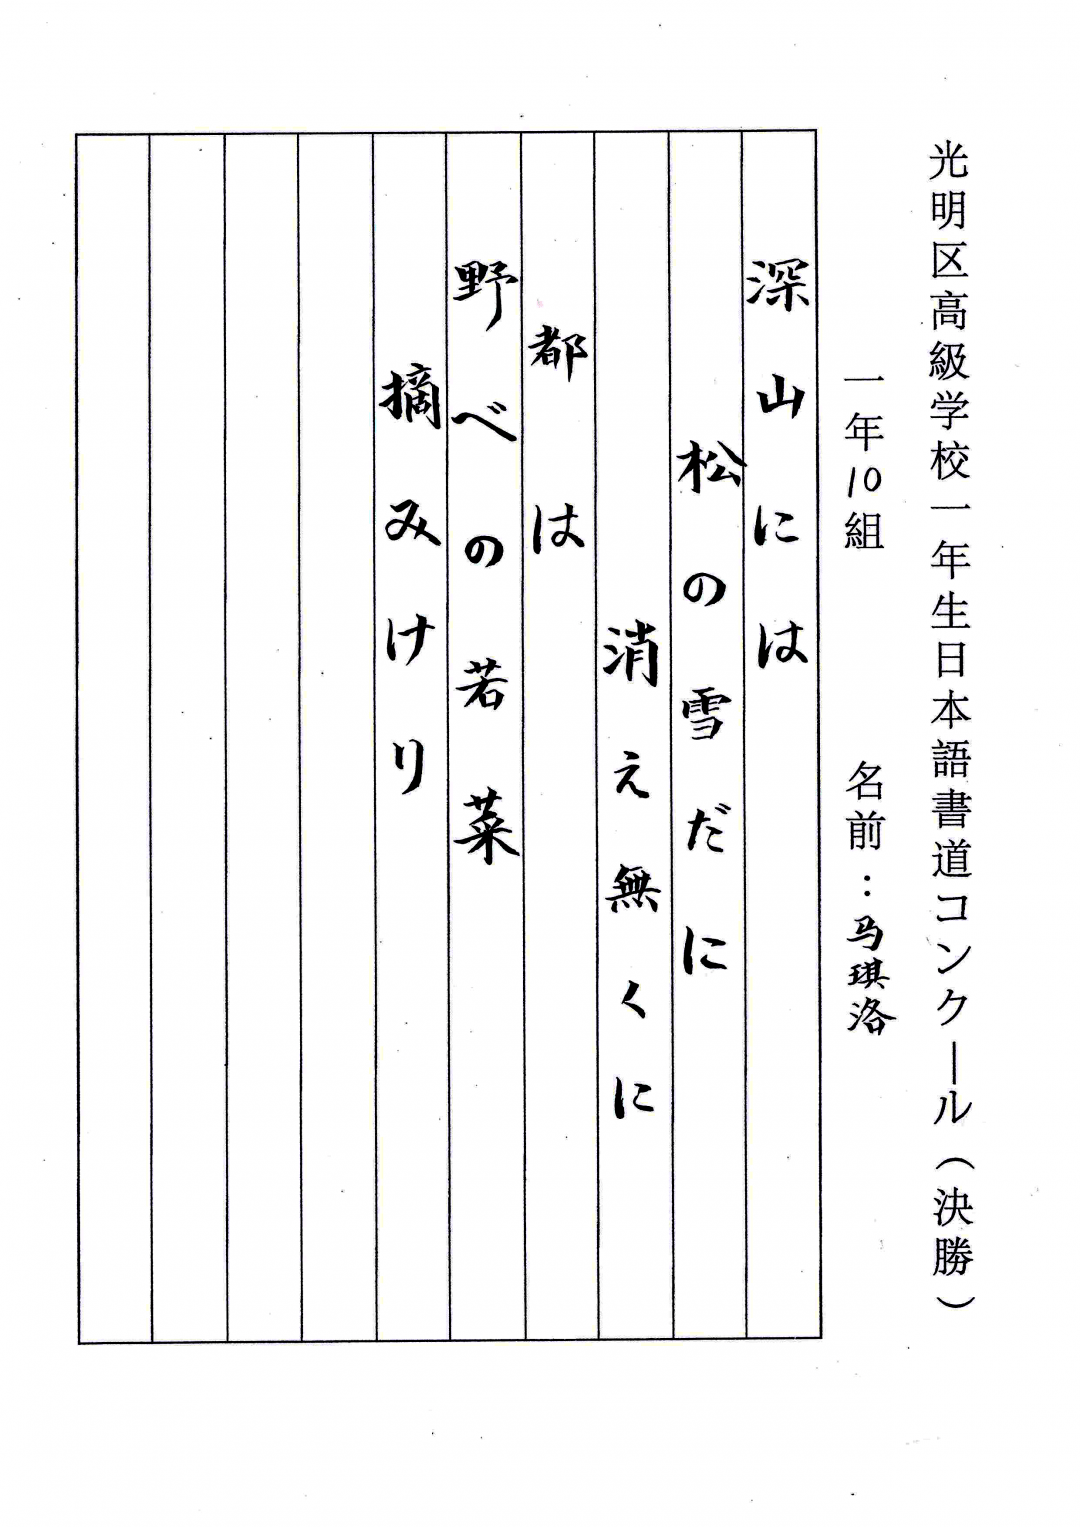 写好日文学好日语高一年级日语书法大赛活动圆满落幕